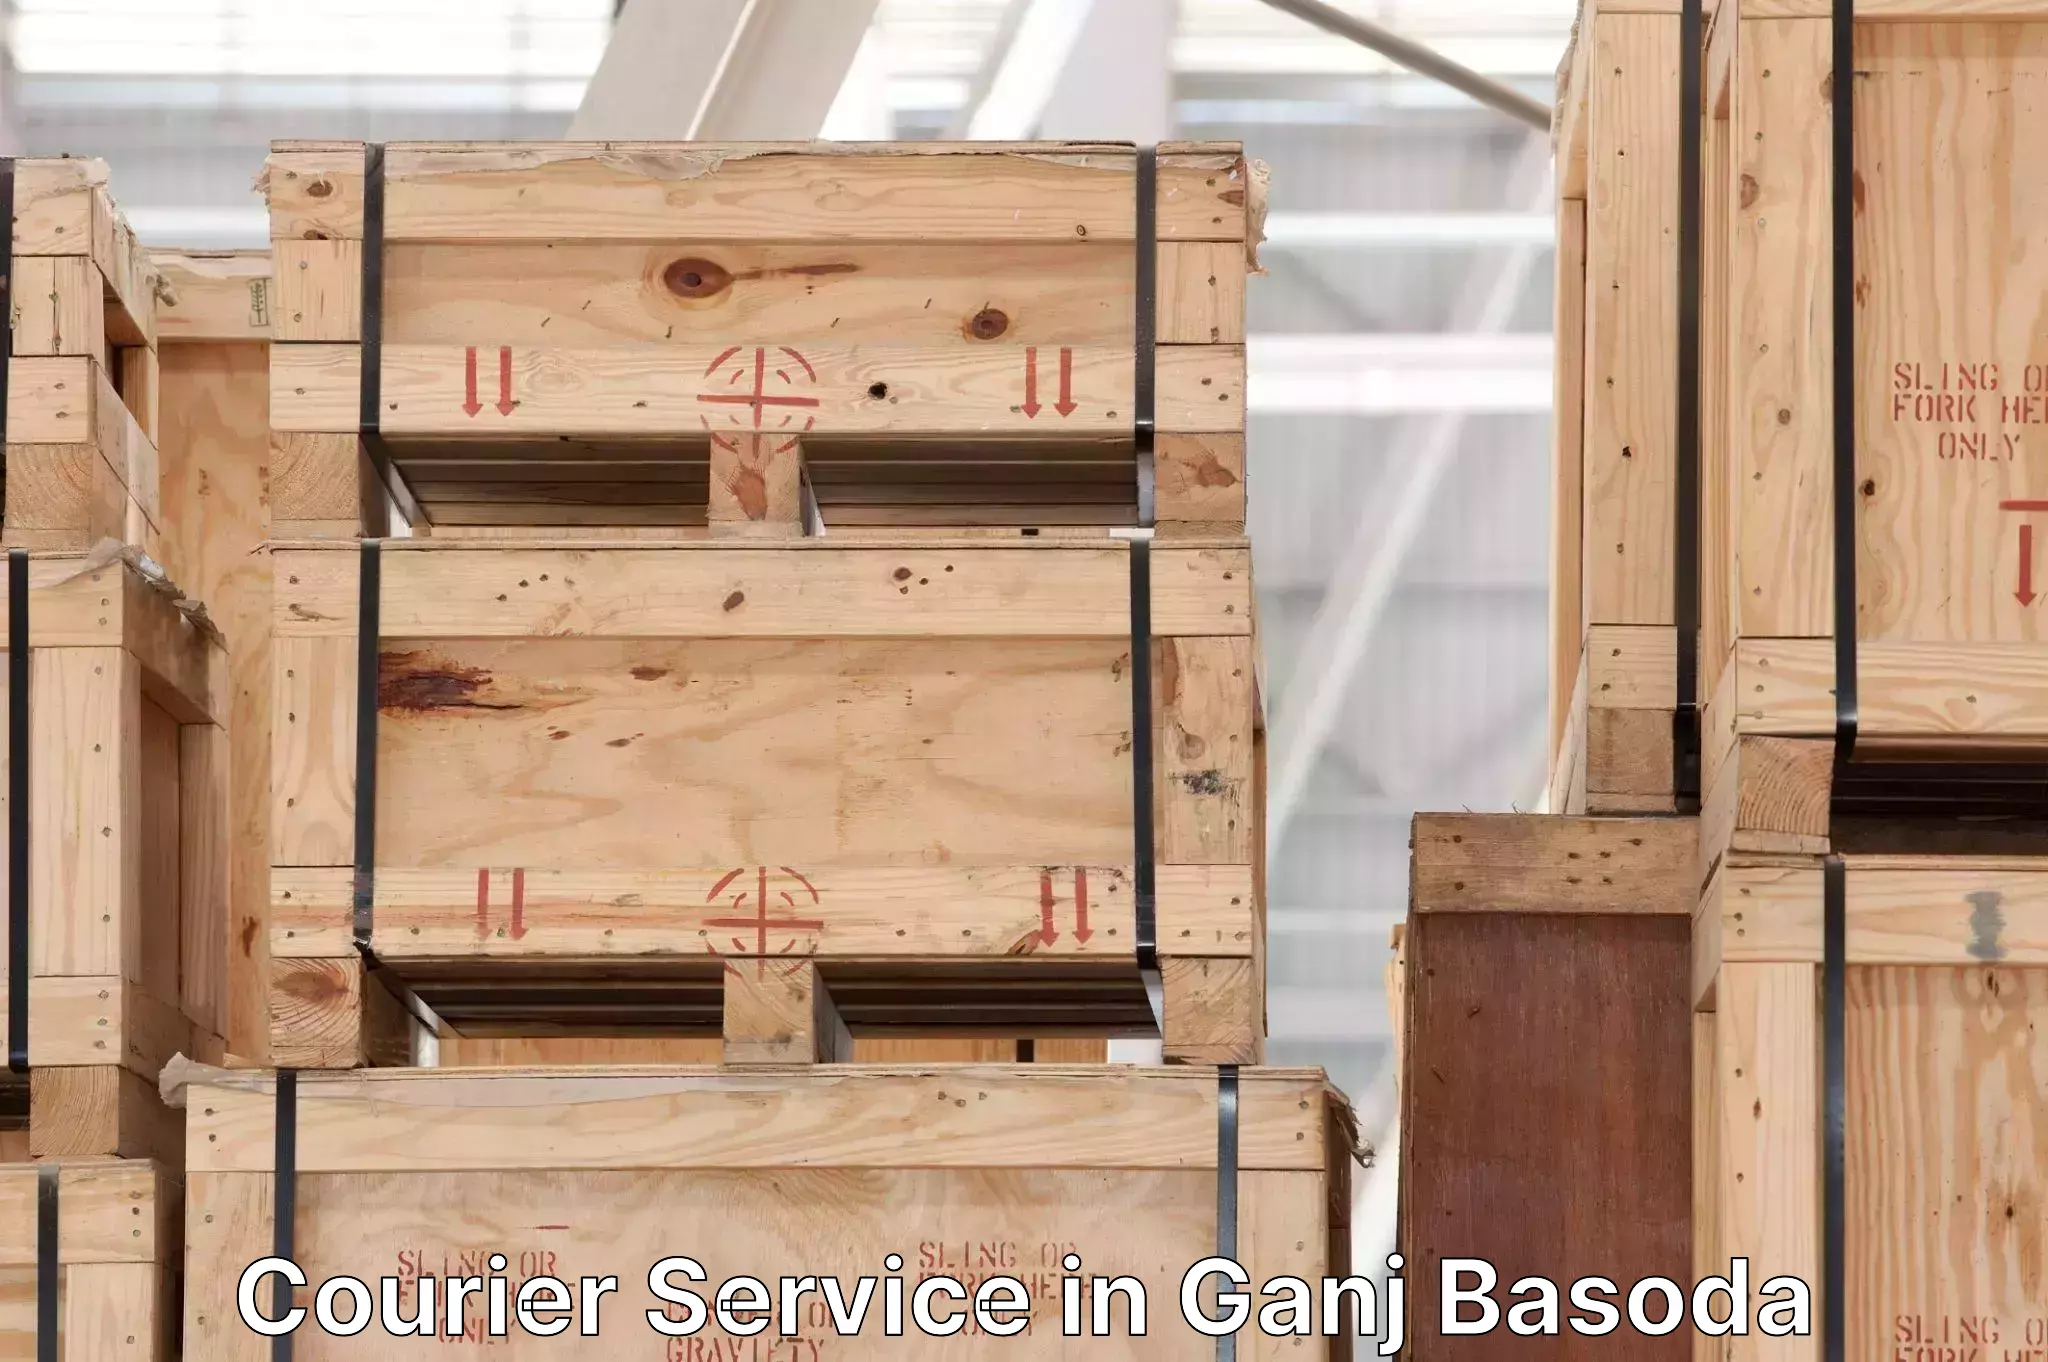 Courier service innovation in Ganj Basoda